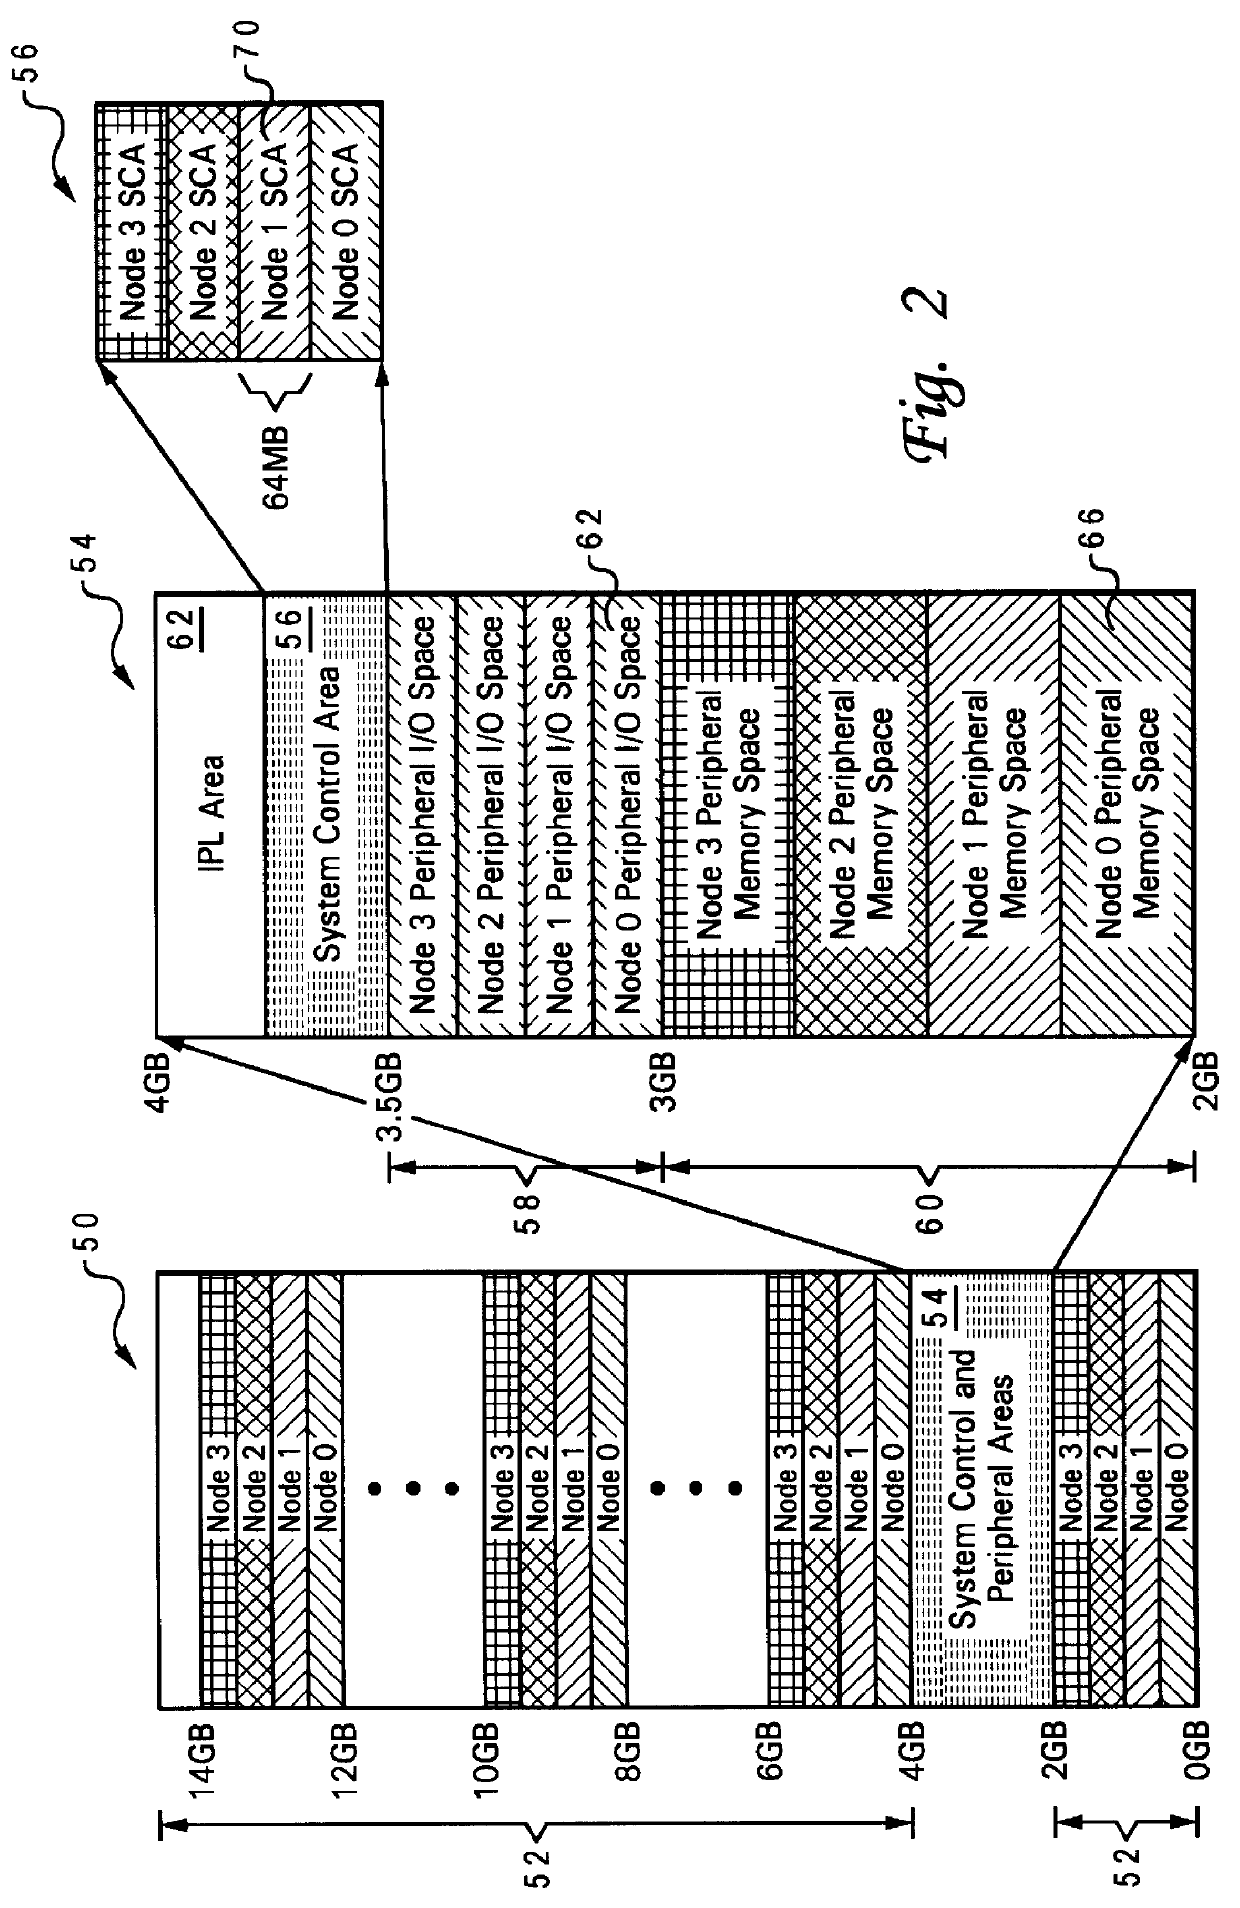 Interrupt architecture for a non-uniform memory access (NUMA) data processing system